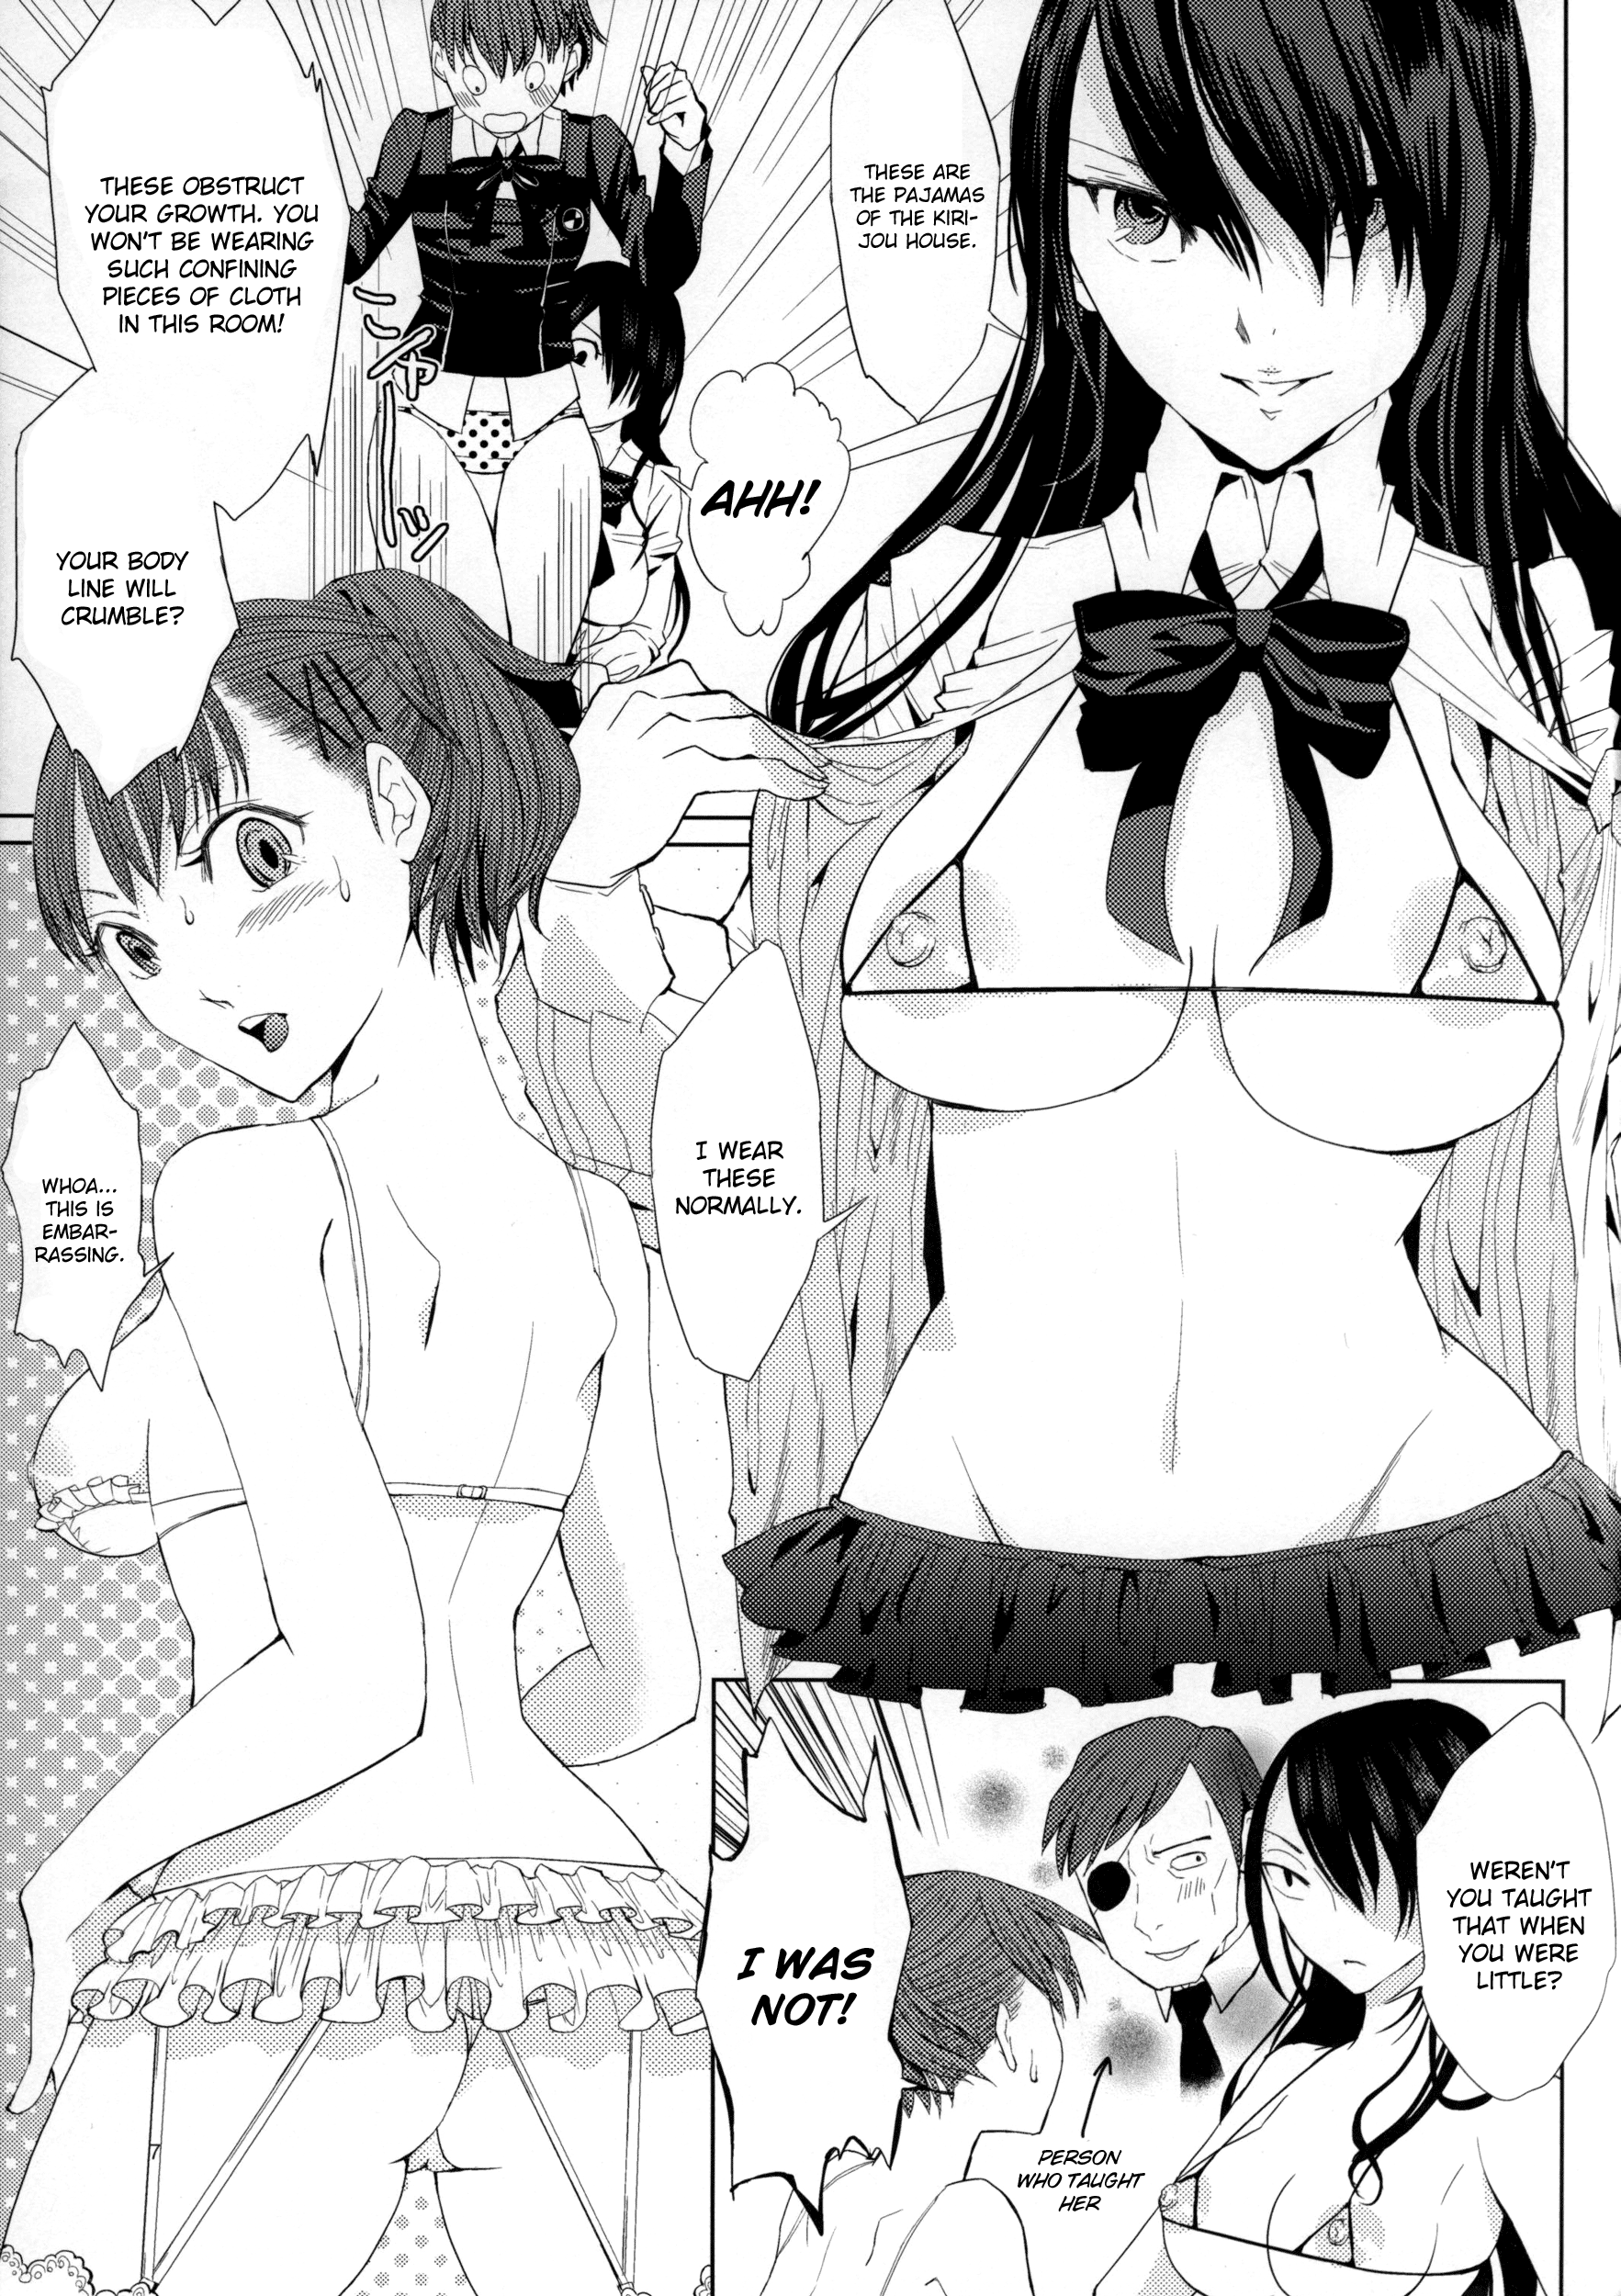 YURI SONA 2 Yoru no Joou - Midnight Queen hentai manga picture 4